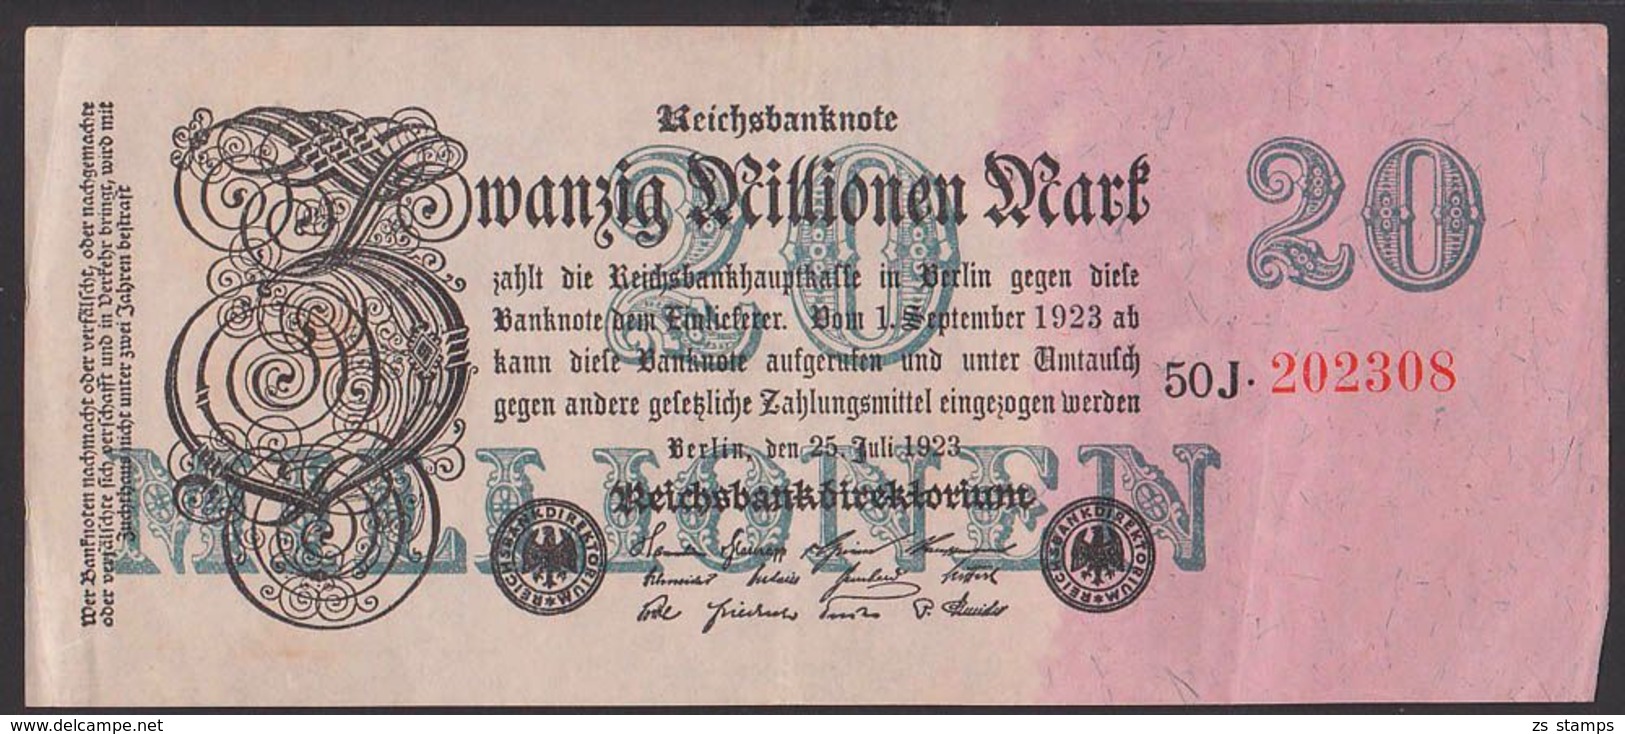 Reichsbanknote 20 Millionen Mark, Ausgabe 25. Juli 1923, Serie 50J - 20 Millionen Mark